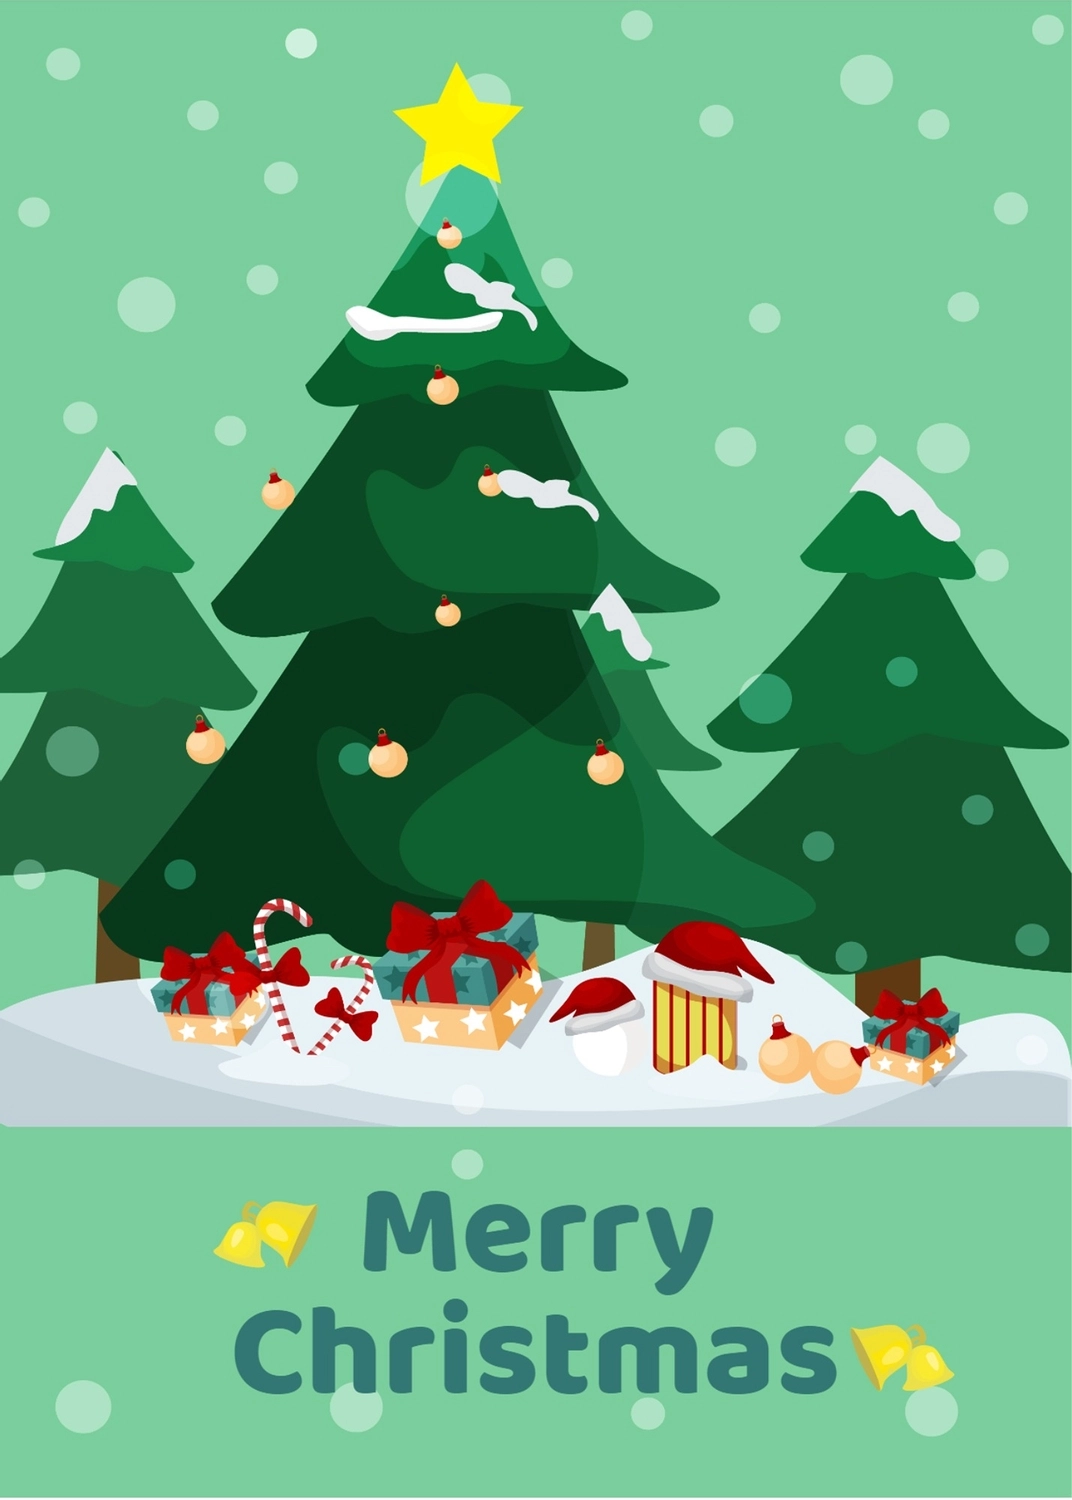 クリスマスツリーとプレゼント, グリーティングカード, グリーティング, ハガキ, グリーティングカードテンプレート